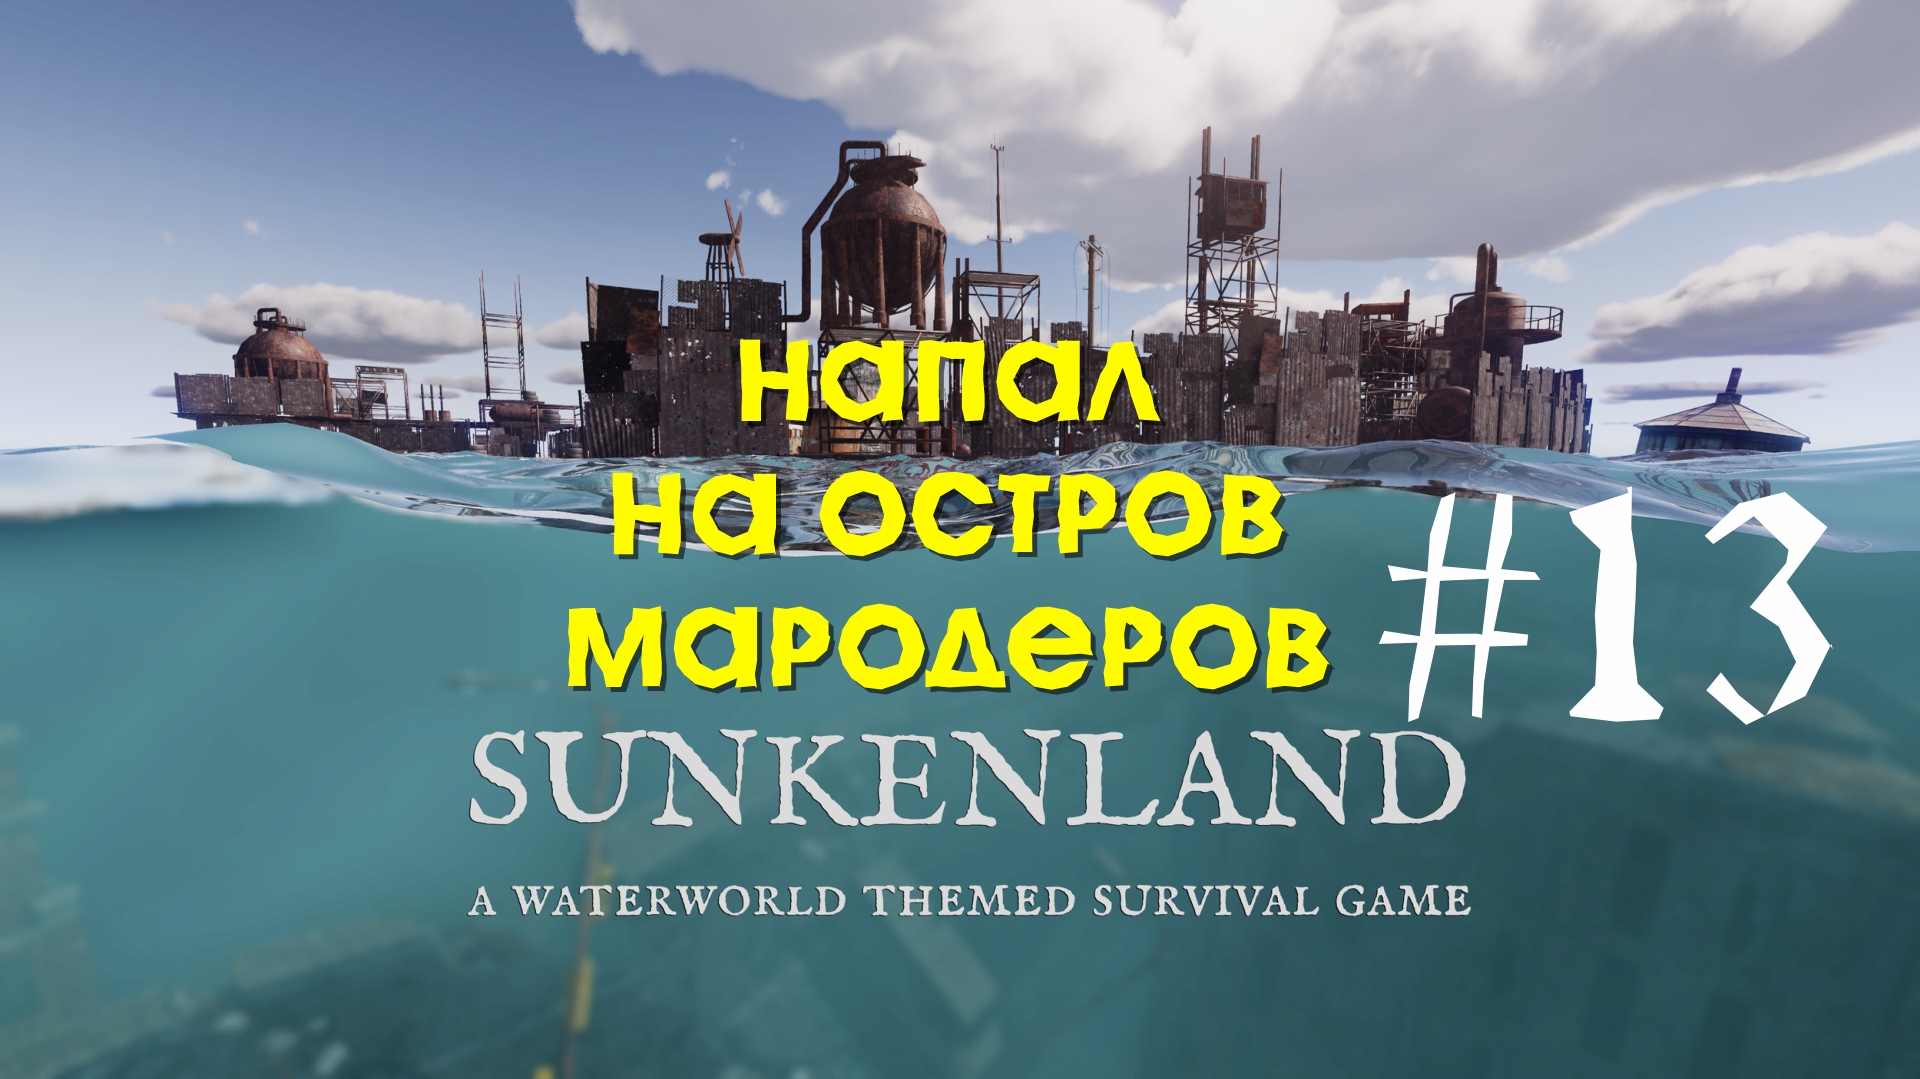 Sunkenland | Напал на остров мародеров | Прохождение #13